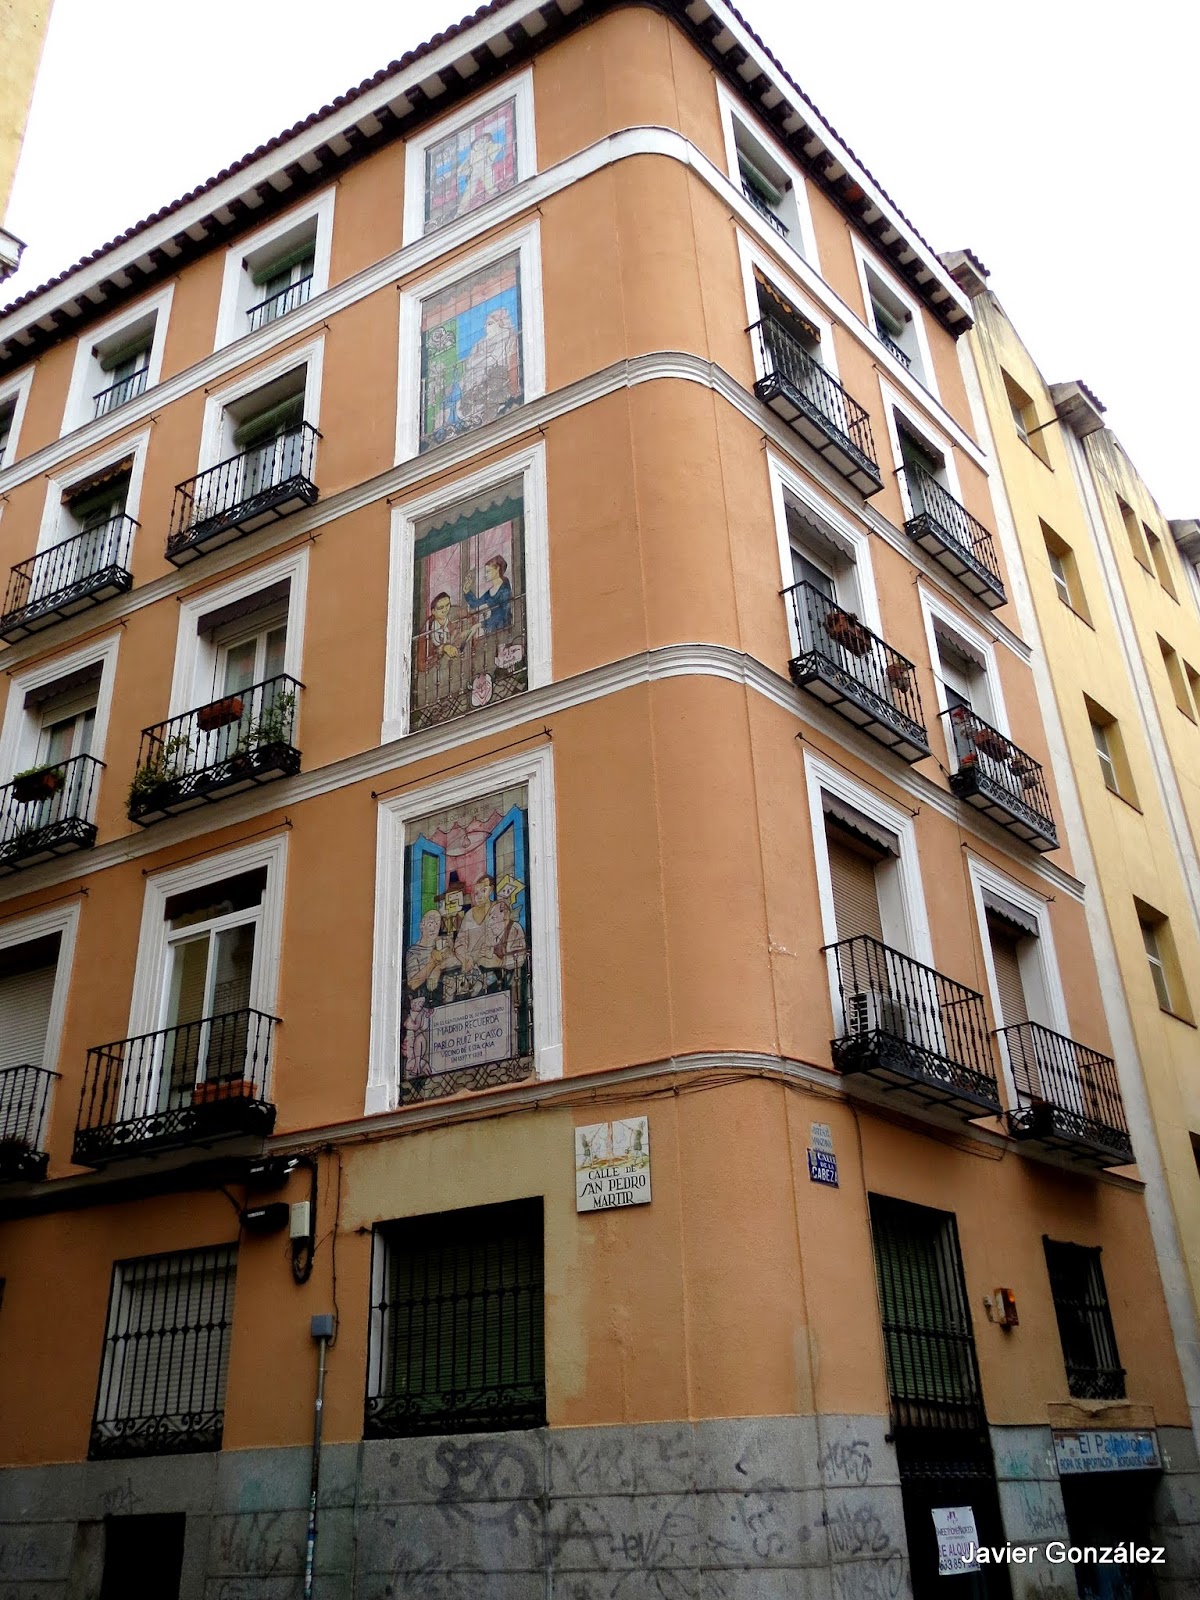 Cuadros en azulejos de Picasso. Lavapiés. Madrid #cityscapes